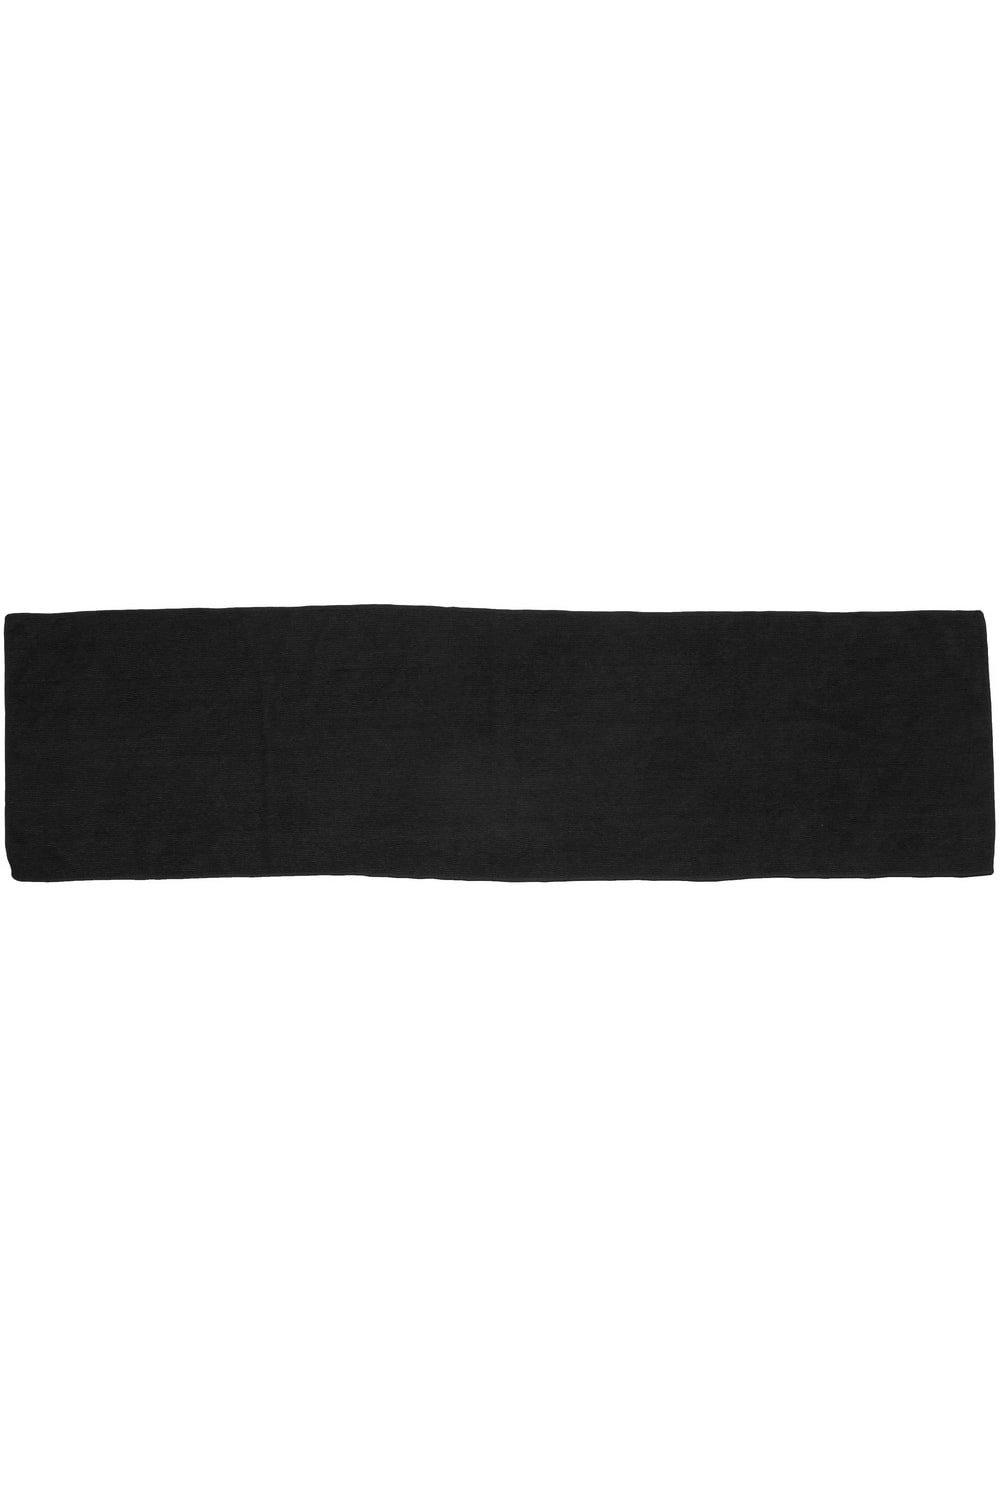 Towel City Microfibre Sports Towel|black